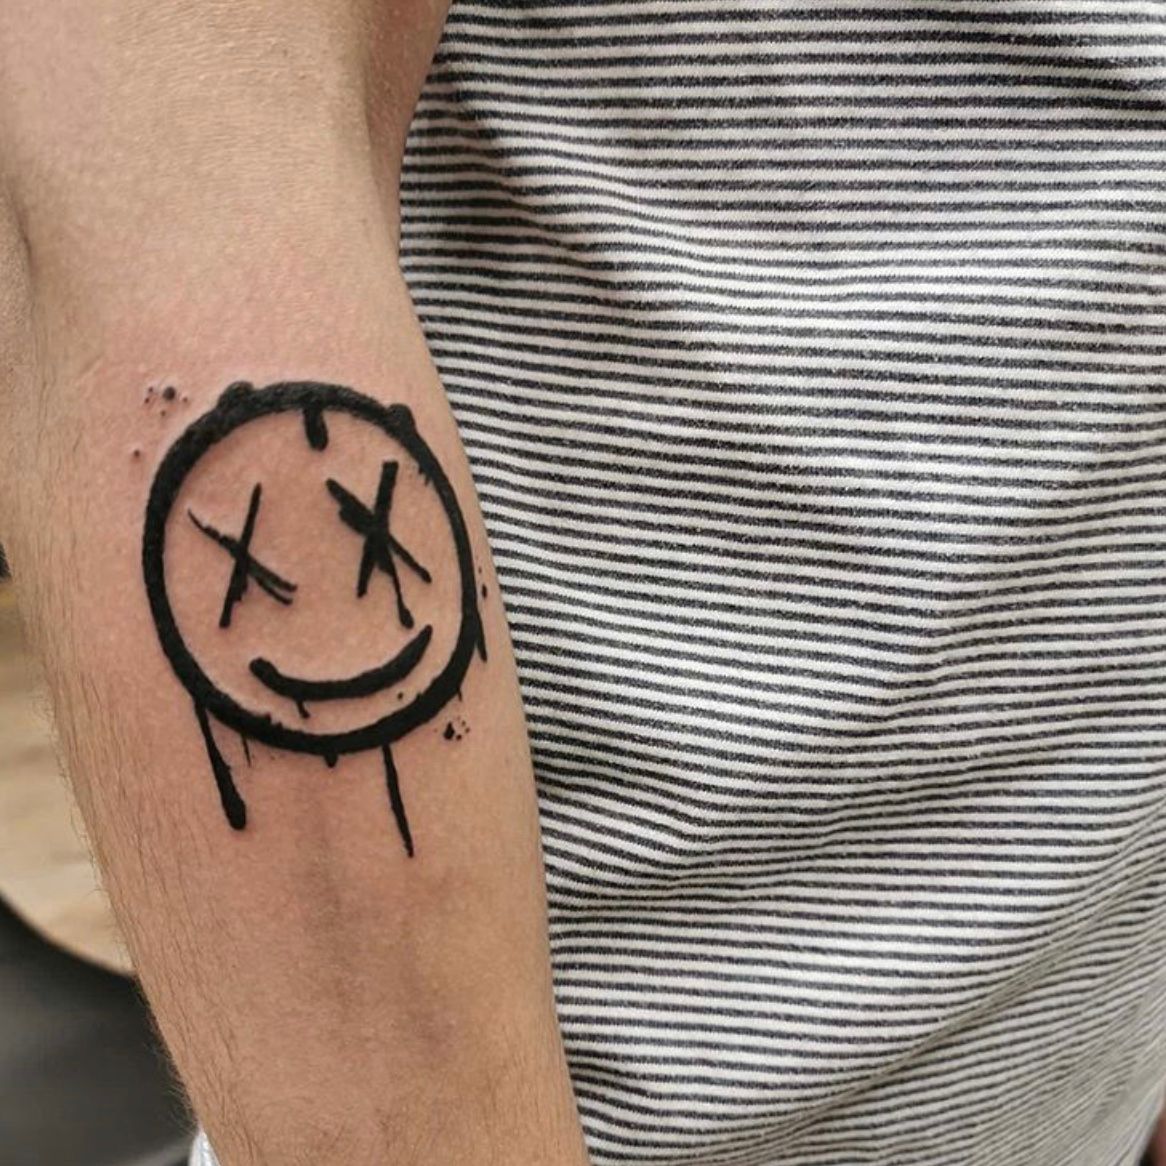 Smile lettering tattoo on the inner forearm